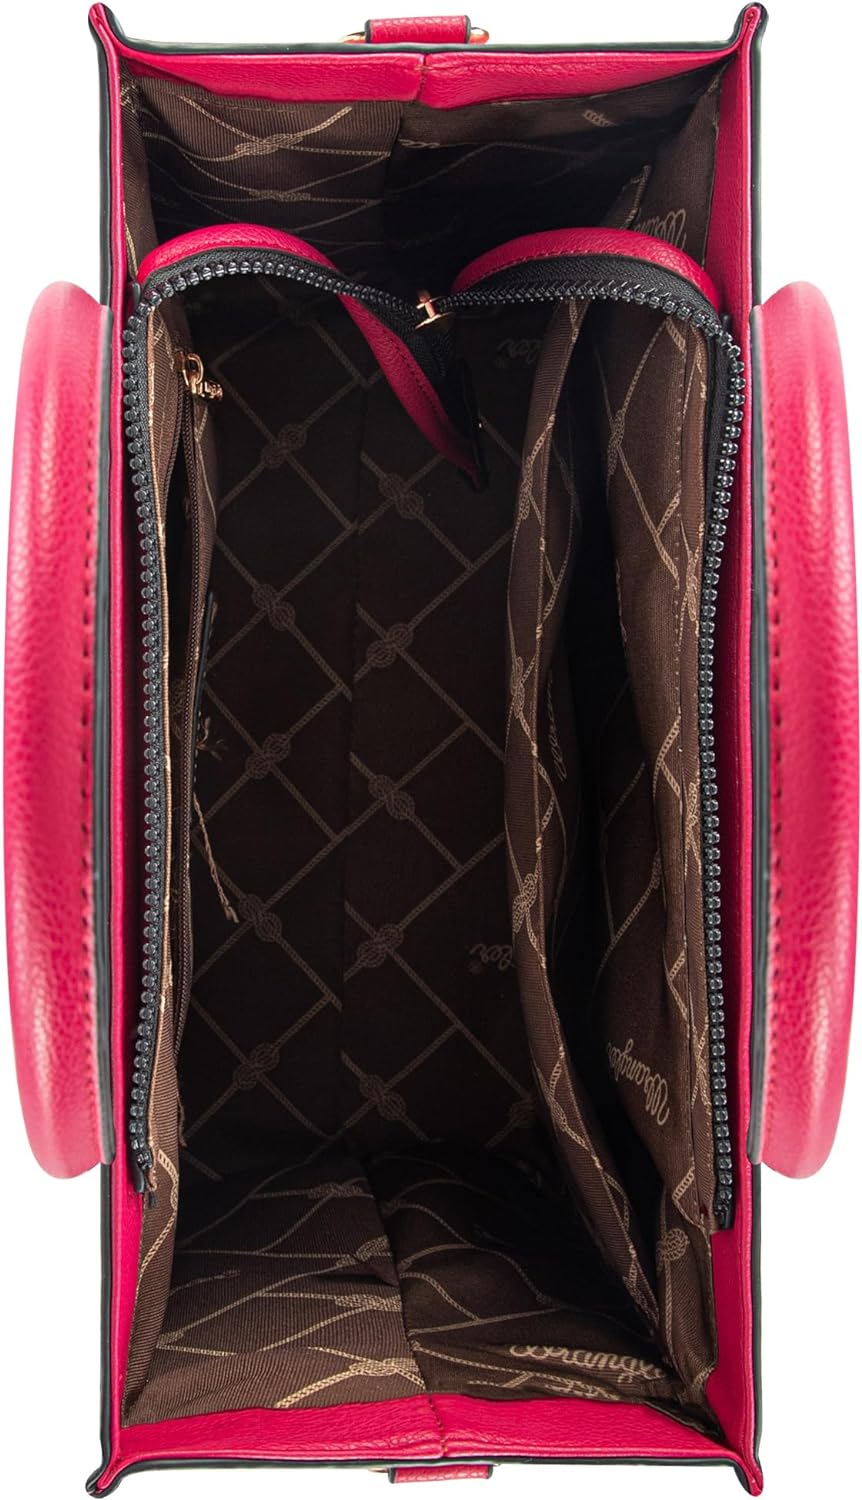 Wrangler Tote Bag for Women Shoulder Purse Handbag with Zipper Crossbody Bag